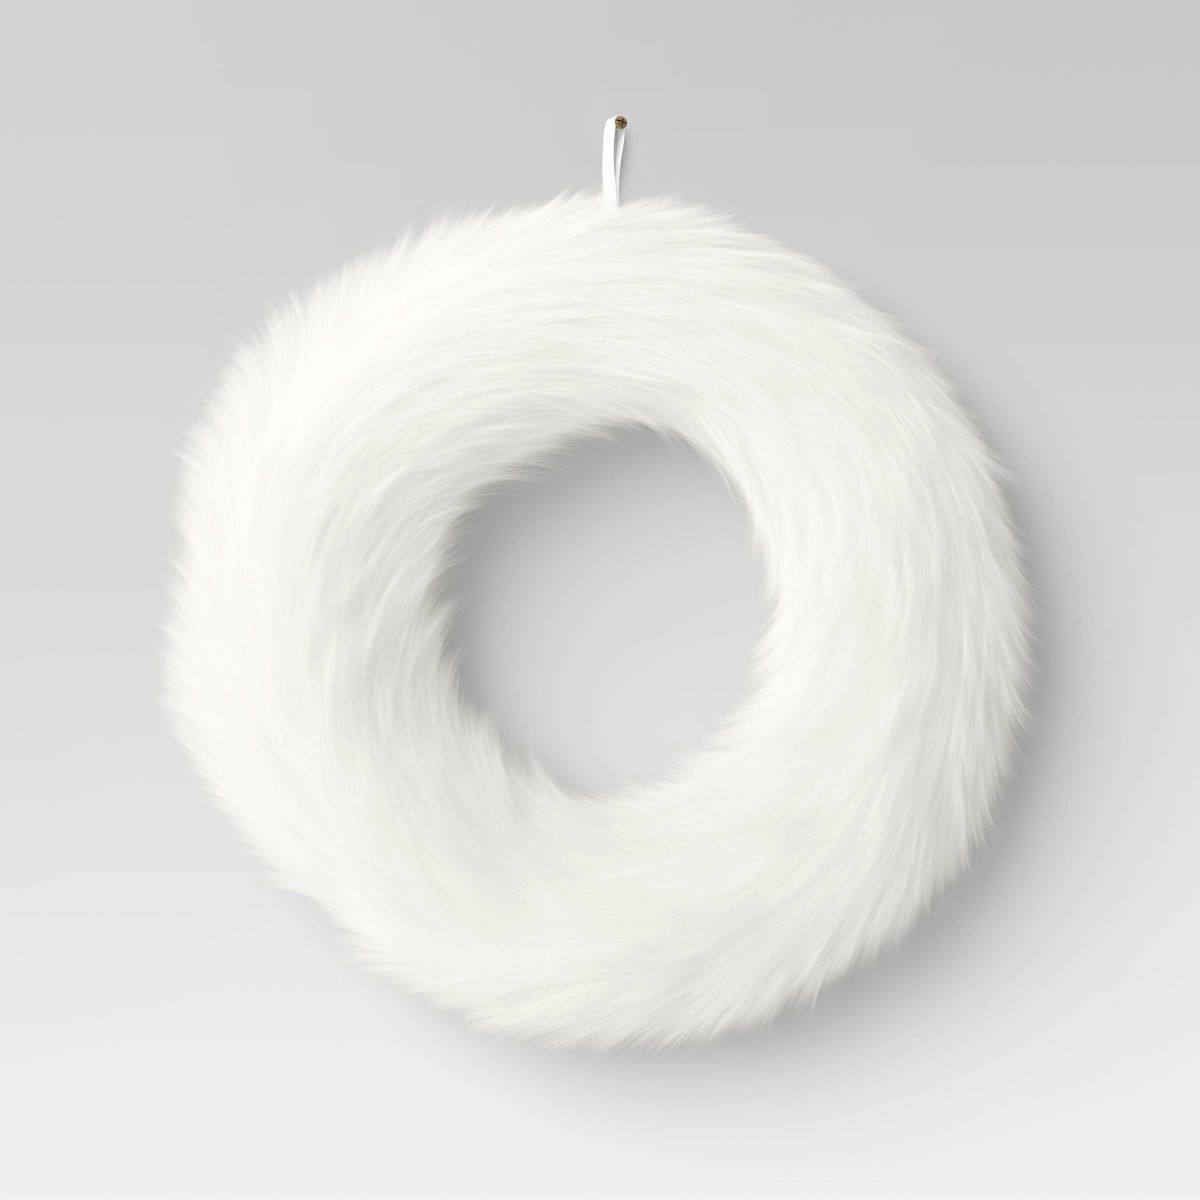 22" Faux Fur Christmas Decorative Wreath White - Wondershop™ | Target